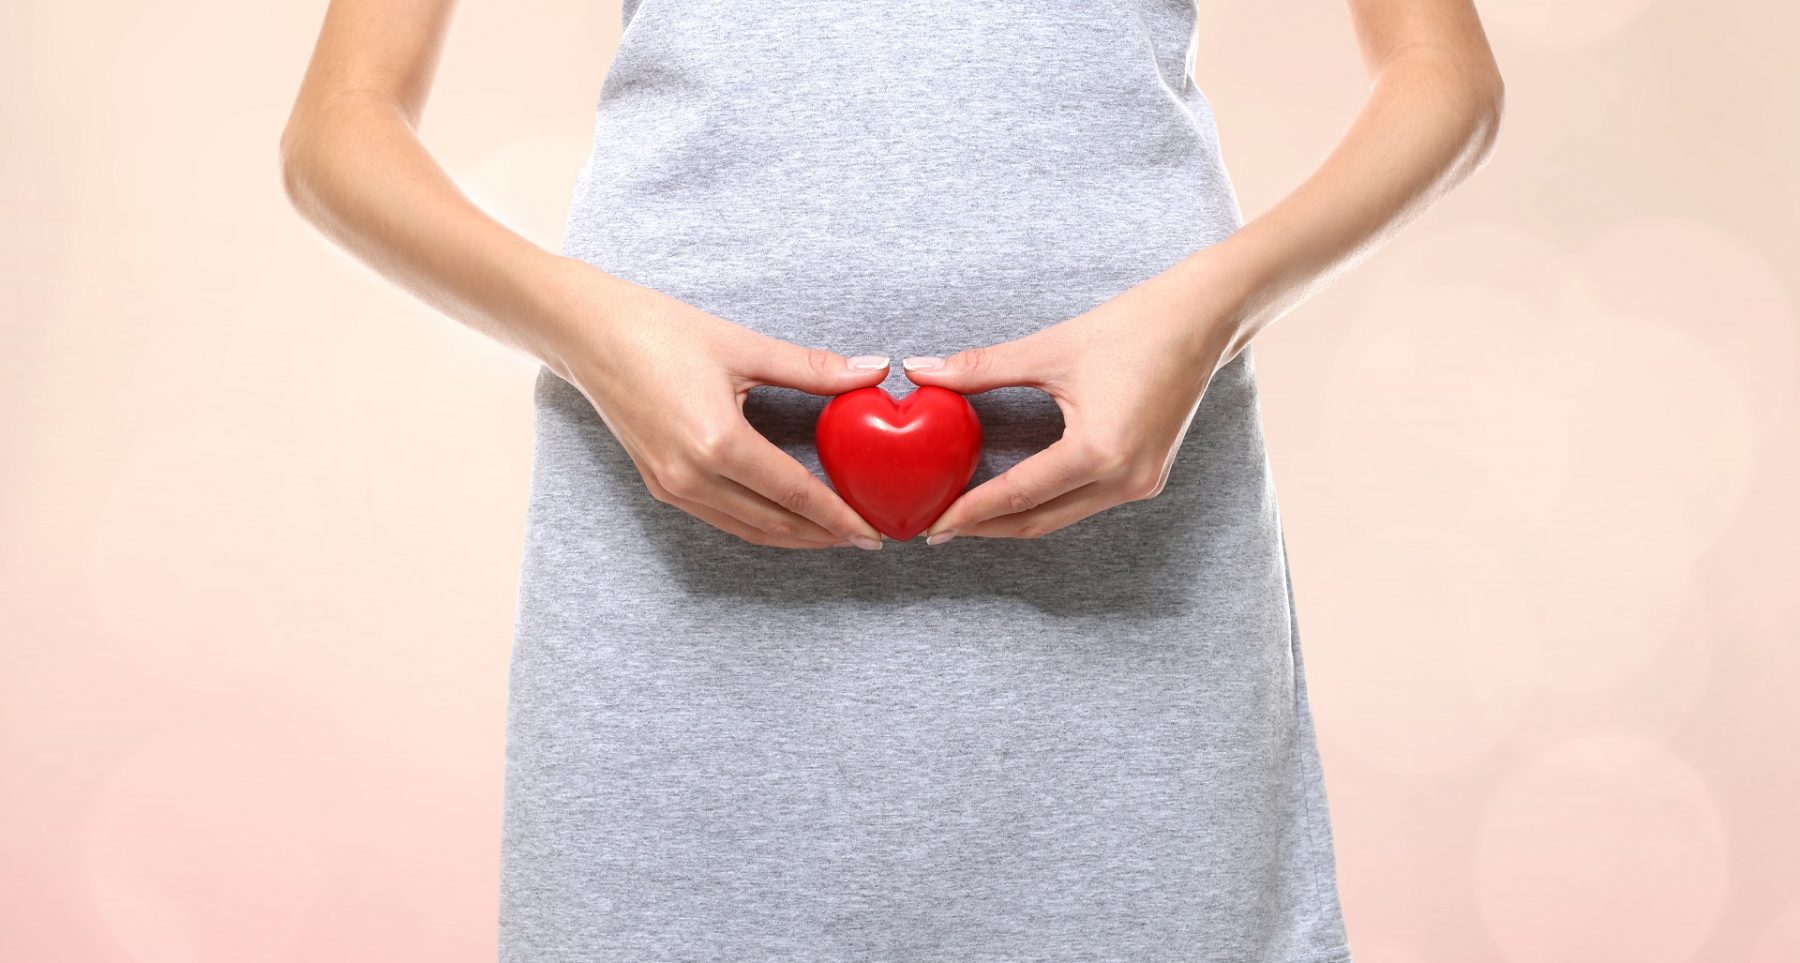 sabes que es la estimulacion ovarica hoy en nuestro blog todo sobre esta parte de tratamientos de reproduccion asistida de mano de nuestros expertos en fertilidad